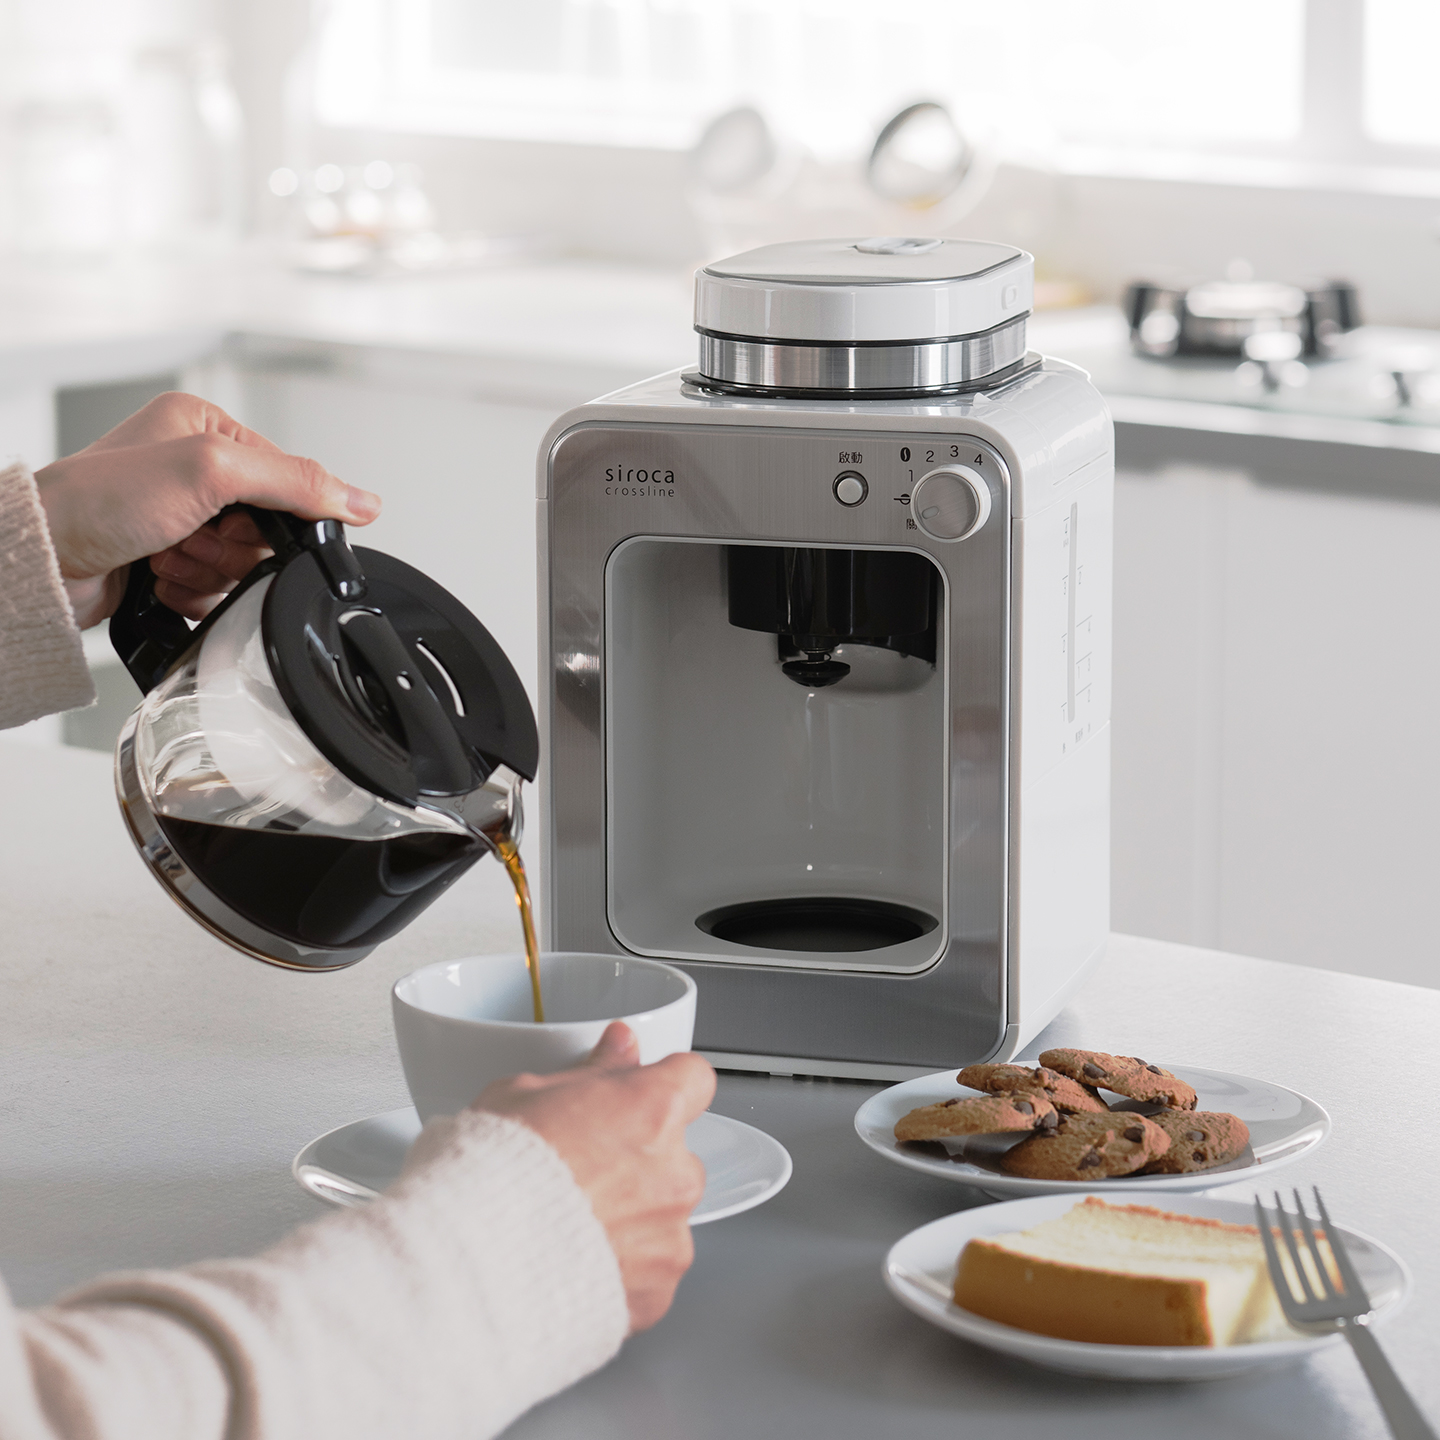 【獨家優惠組】SC-A1210 自動研磨咖啡機 完美白+DAILY LAB 小金條車用香氛